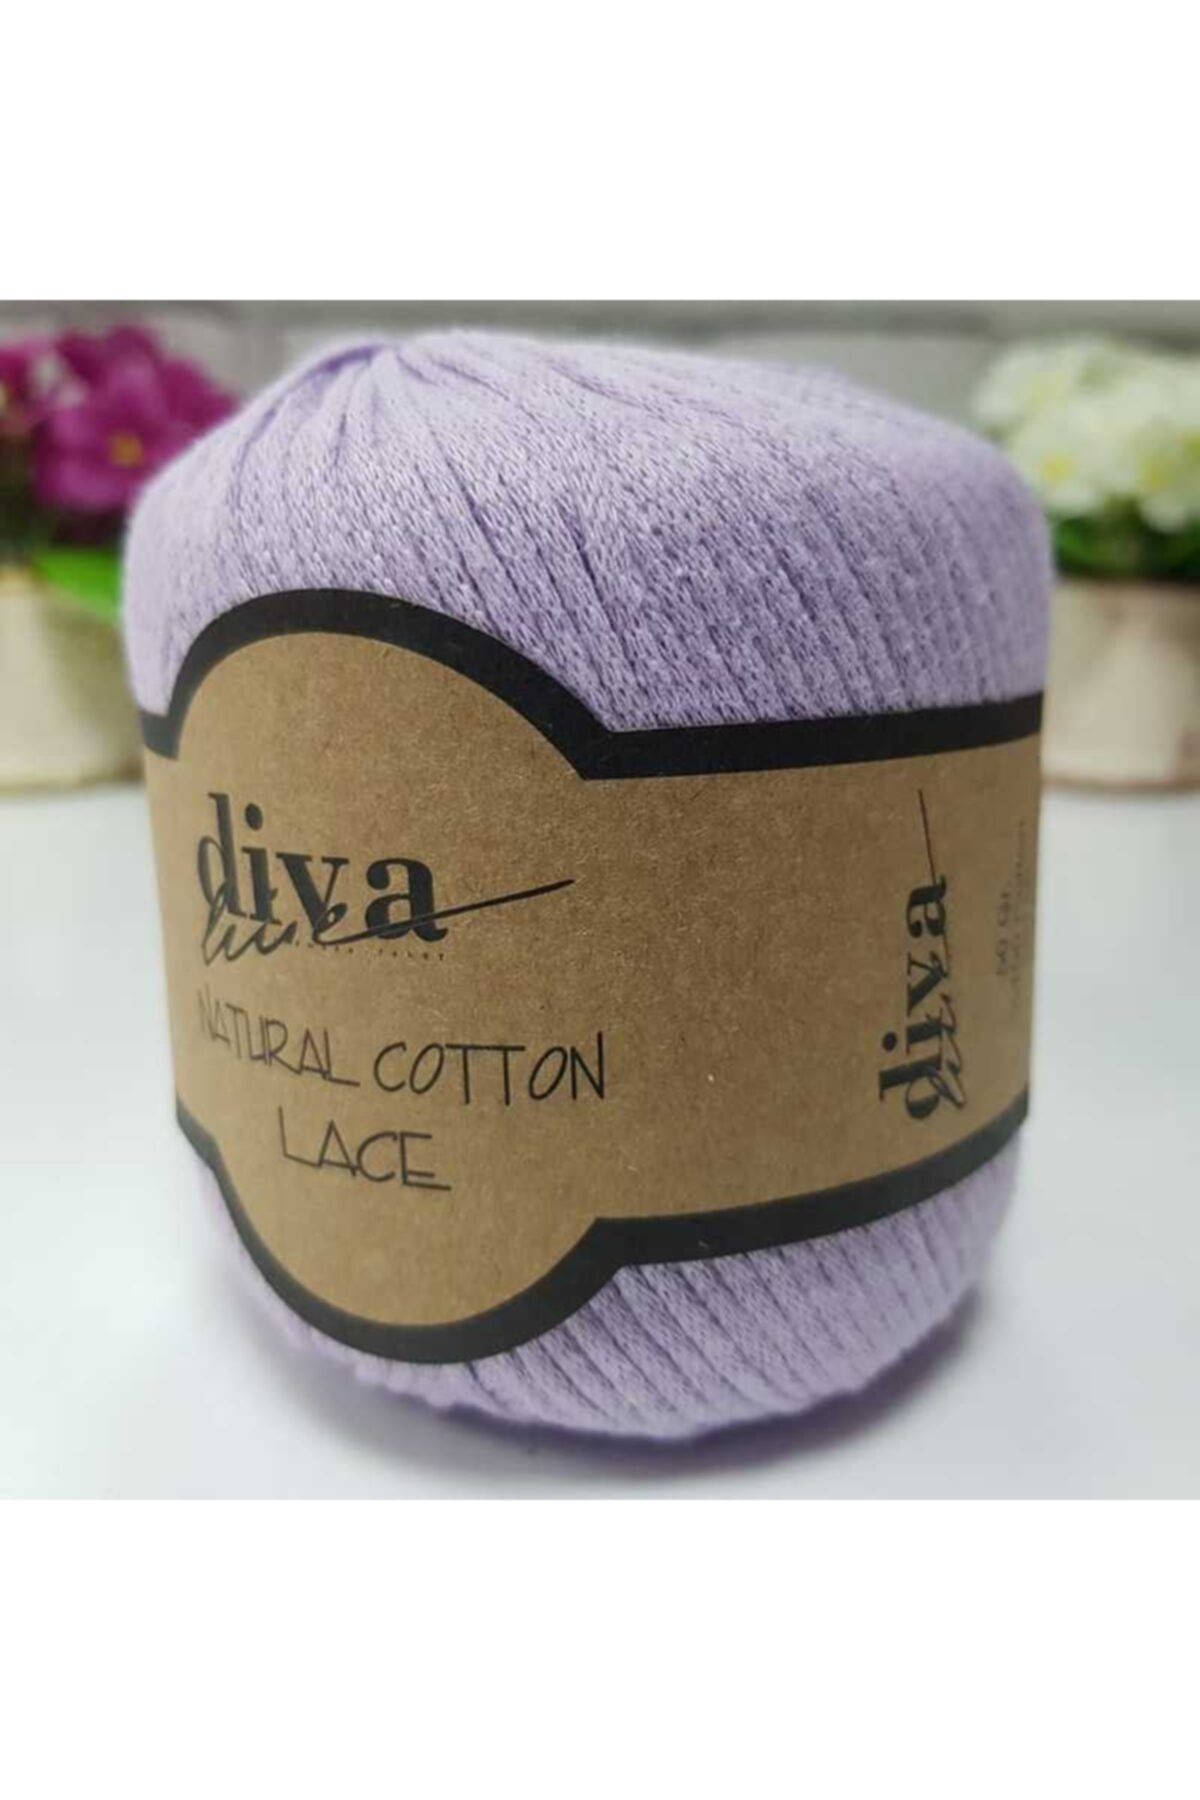 Diva İplik Diva Natural Cotton Lace Lase Ipi 2135 Açık Lila